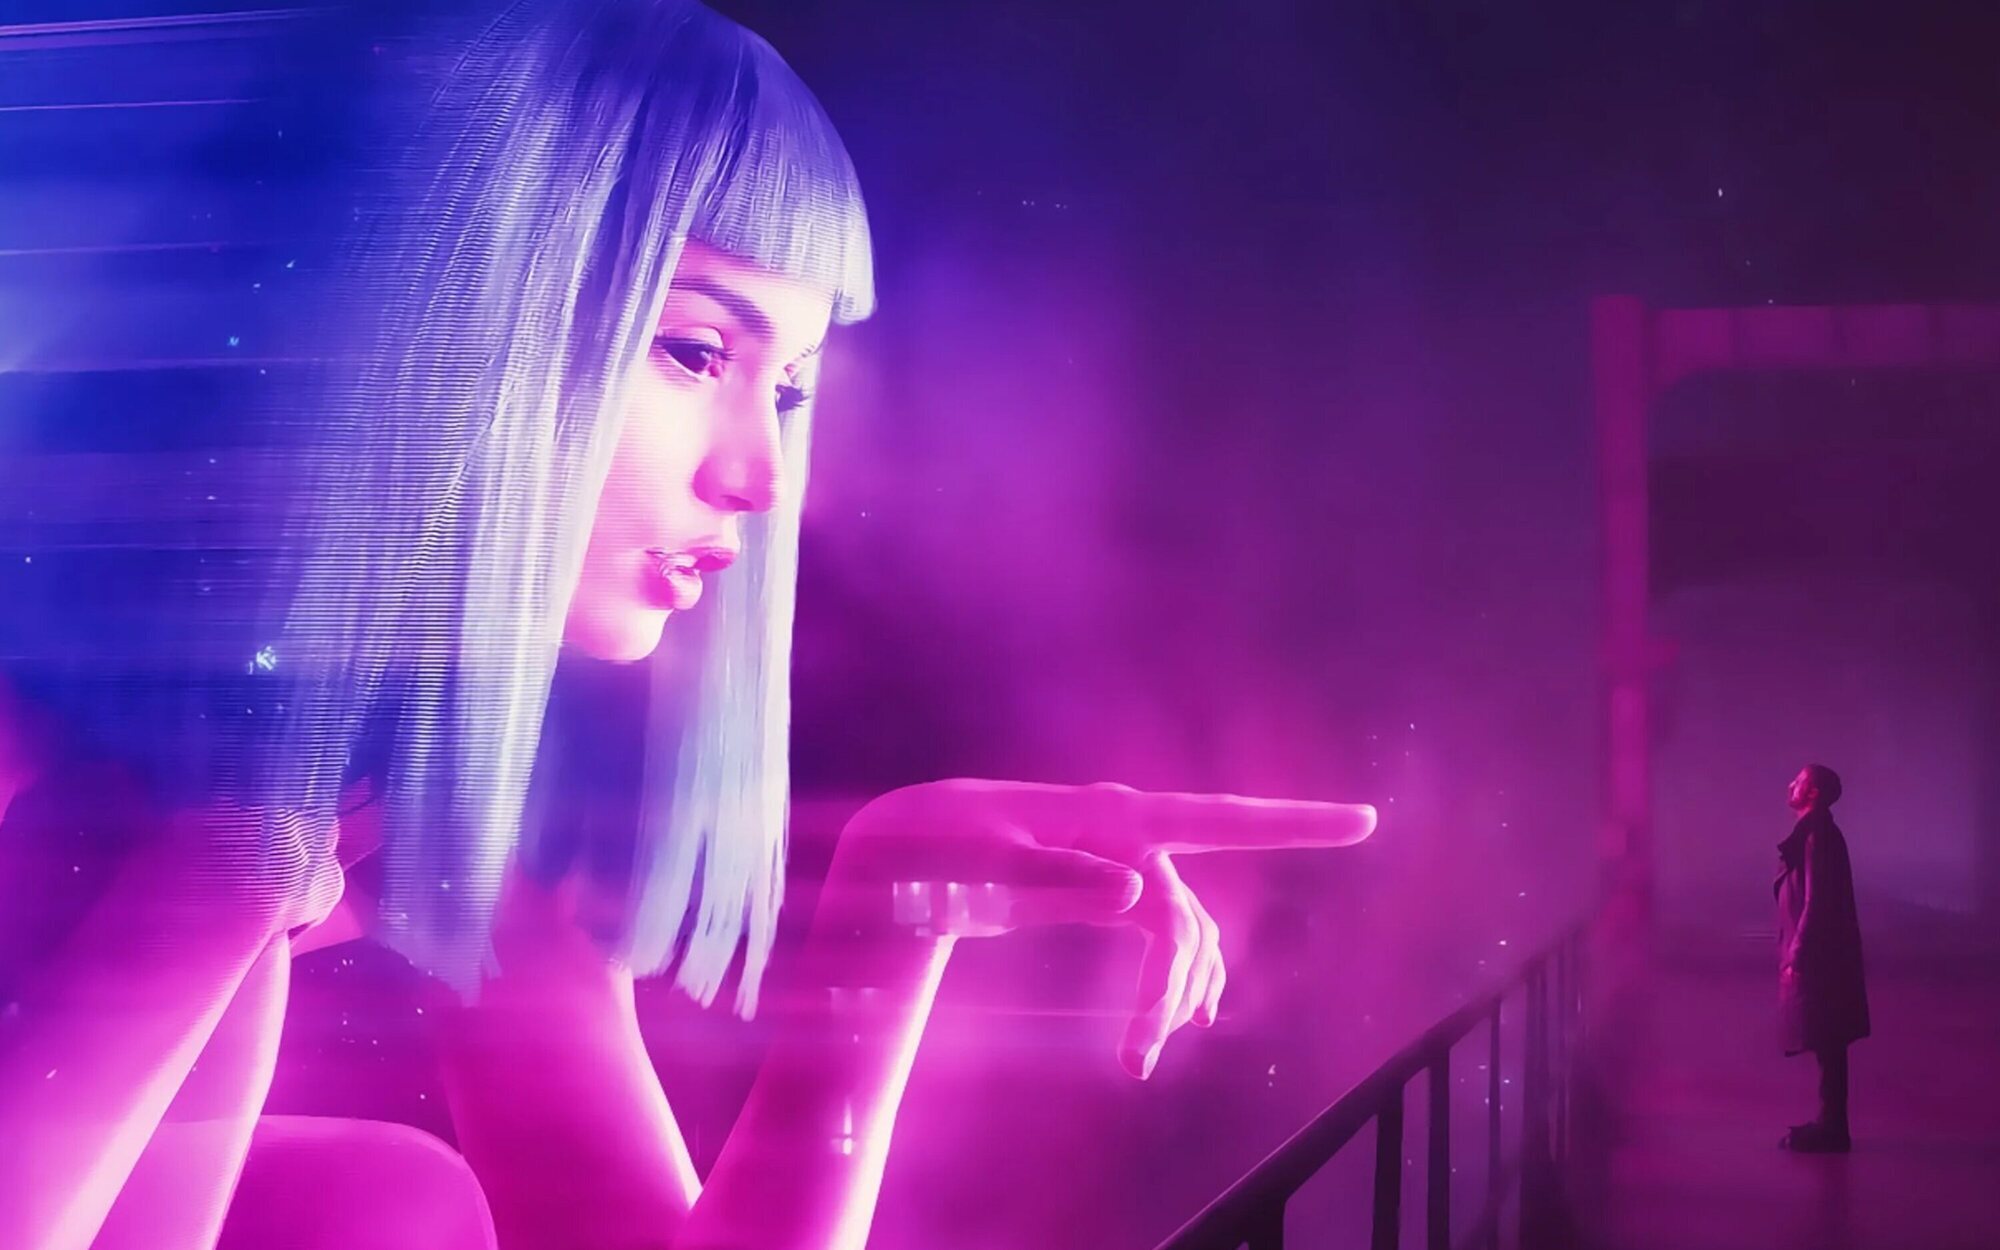 Amazon da luz verde a 'Blade Runner 2099', que estará producida por Ridley Scott